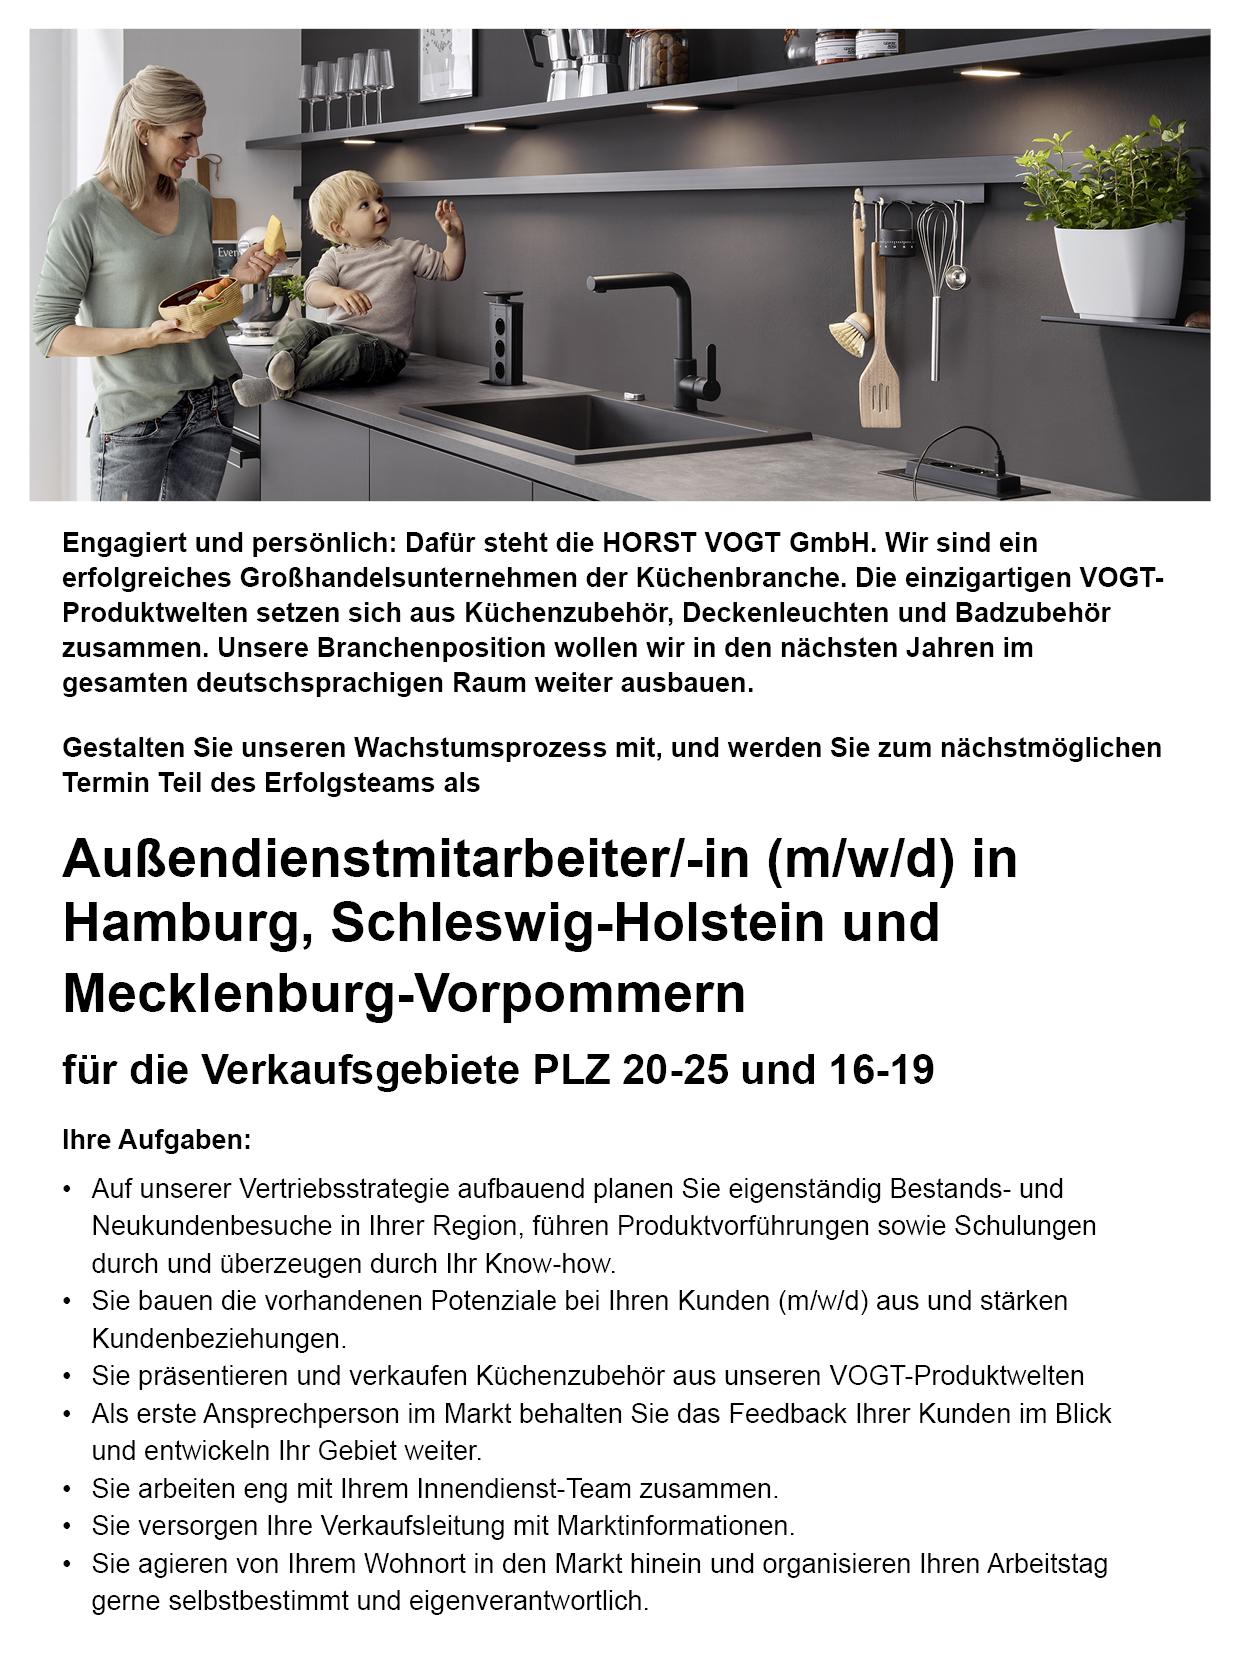 Außendienstmitarbeiter/-in (m/w/d) in Hamburg, Schleswig-Holstein und Mecklenburg-Vorpommern für die Verkaufsgebiete PLZ 20-25 und 16-19